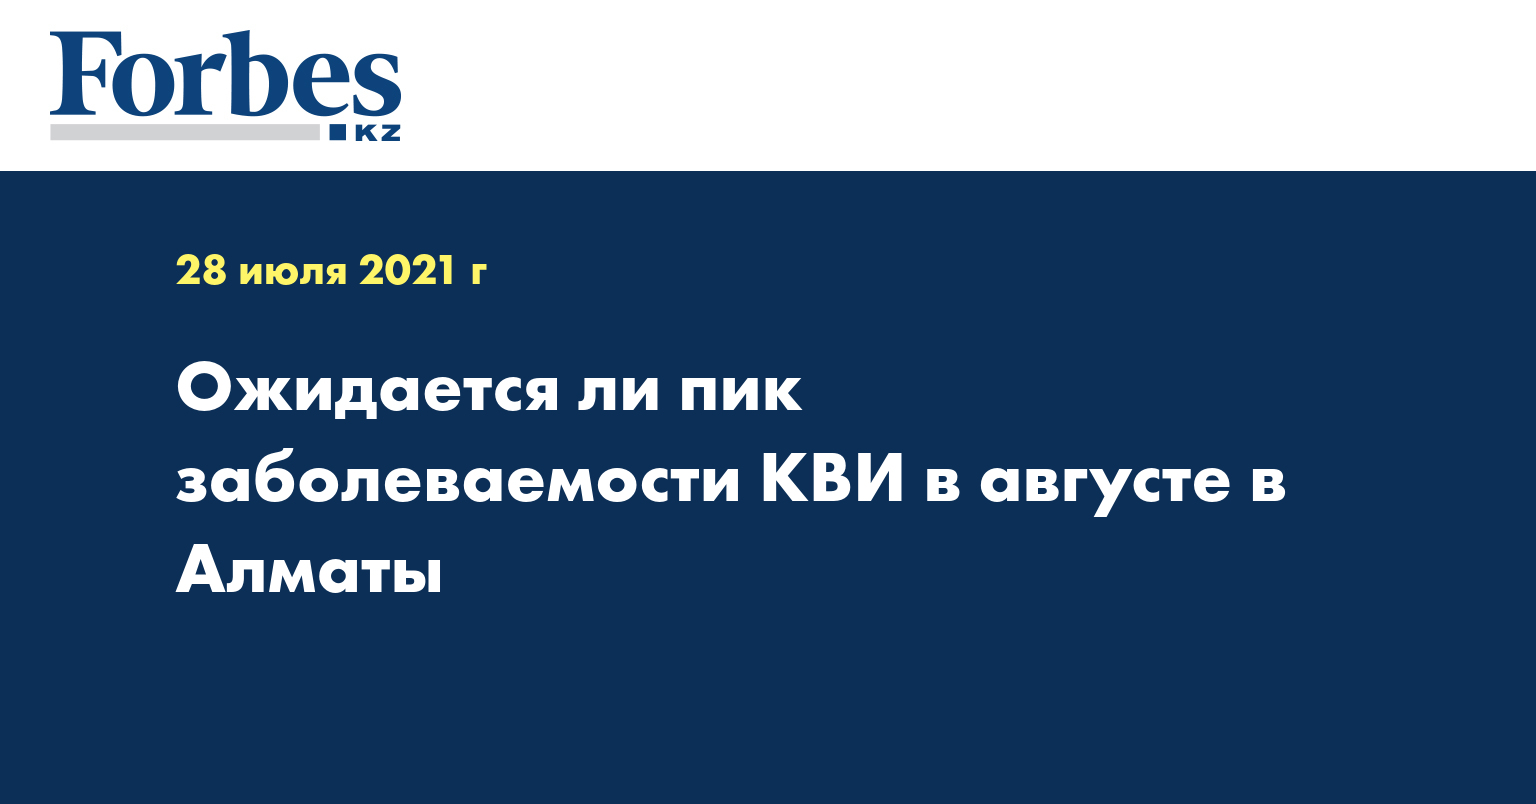  Ожидается ли пик заболеваемости КВИ в августе в Алматы